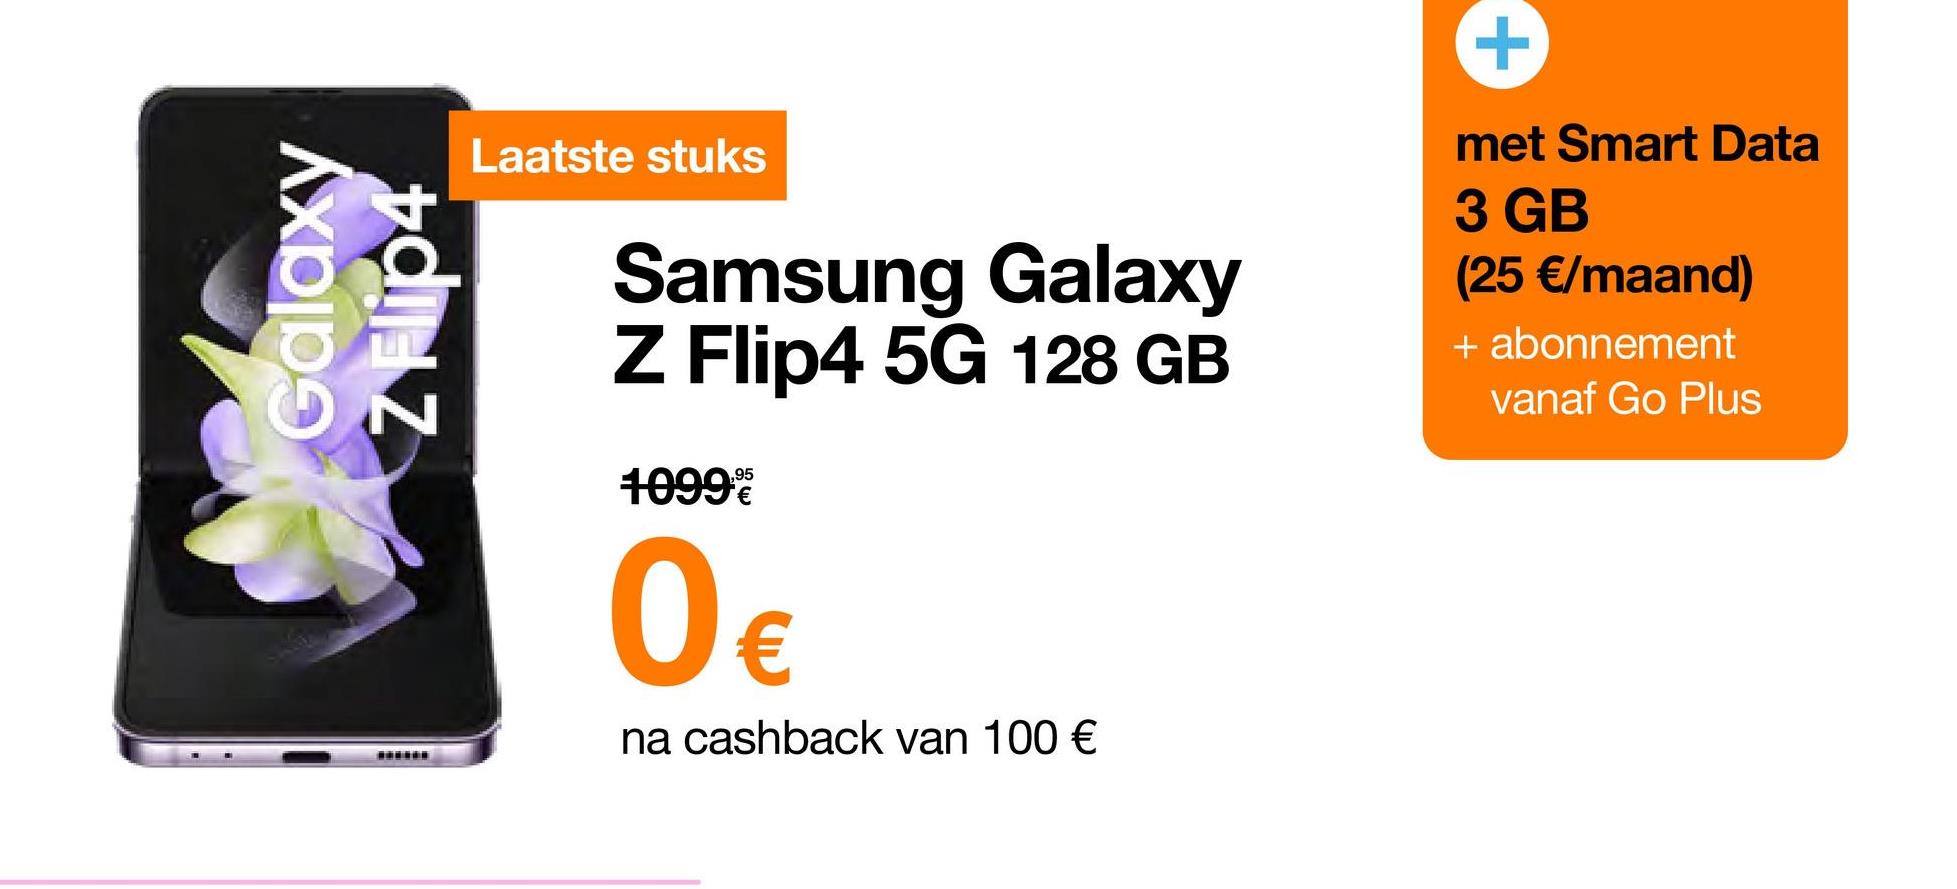 Galaxy
www***
Laatste stuks
Samsung Galaxy
Z Flip4 5G 128 GB
1099€
0€
na cashback van 100 €
+
met Smart Data
3 GB
(25 €/maand)
+ abonnement
vanaf Go Plus